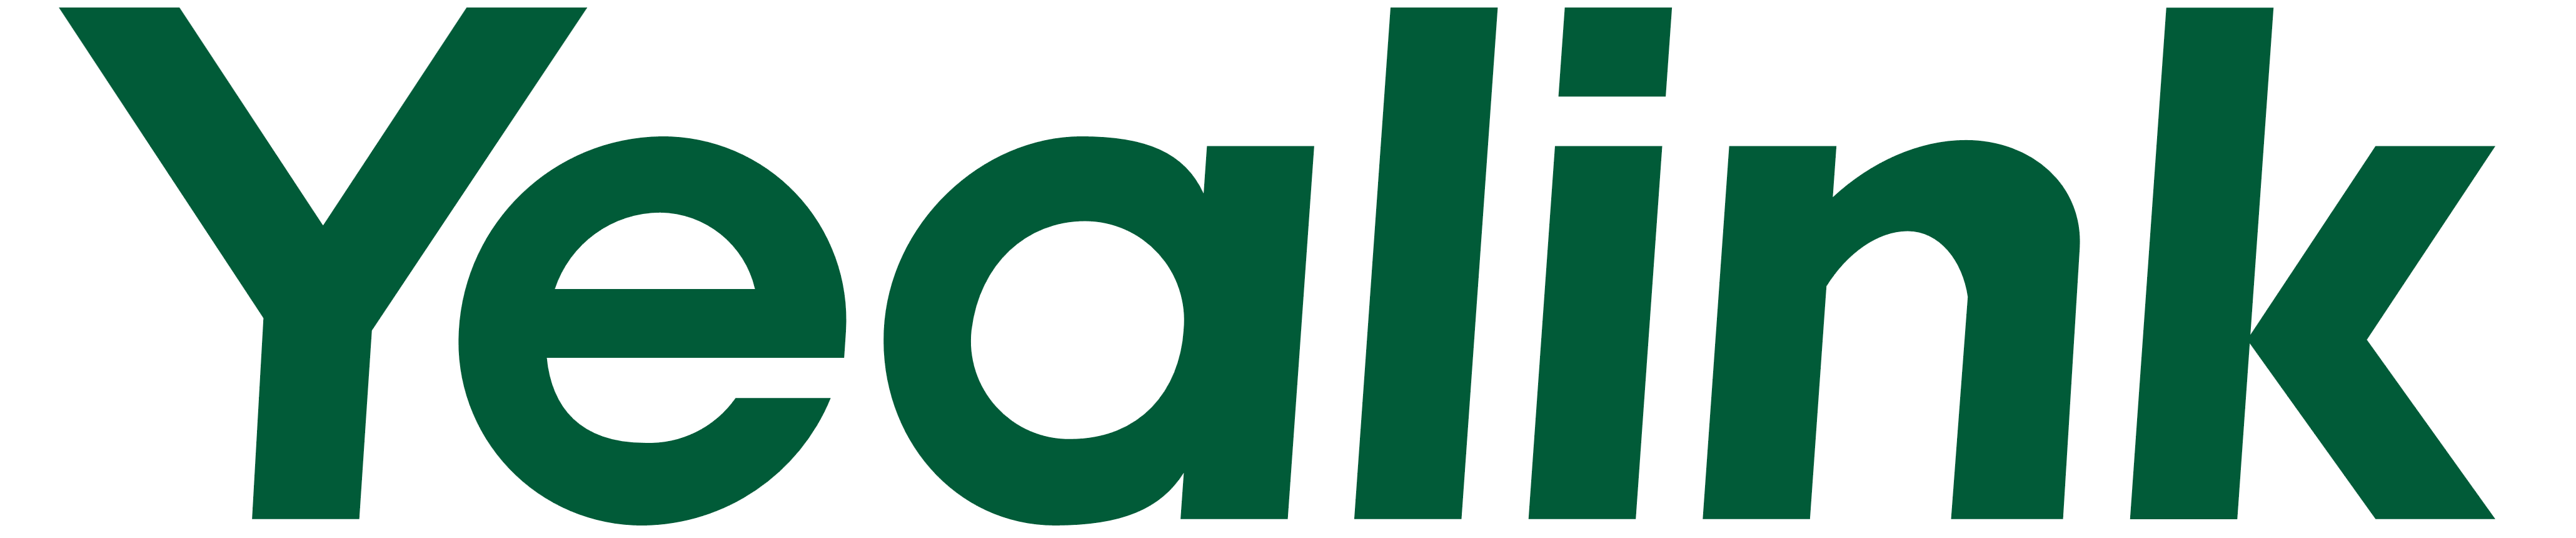 Yealink_logo_logotype (002)